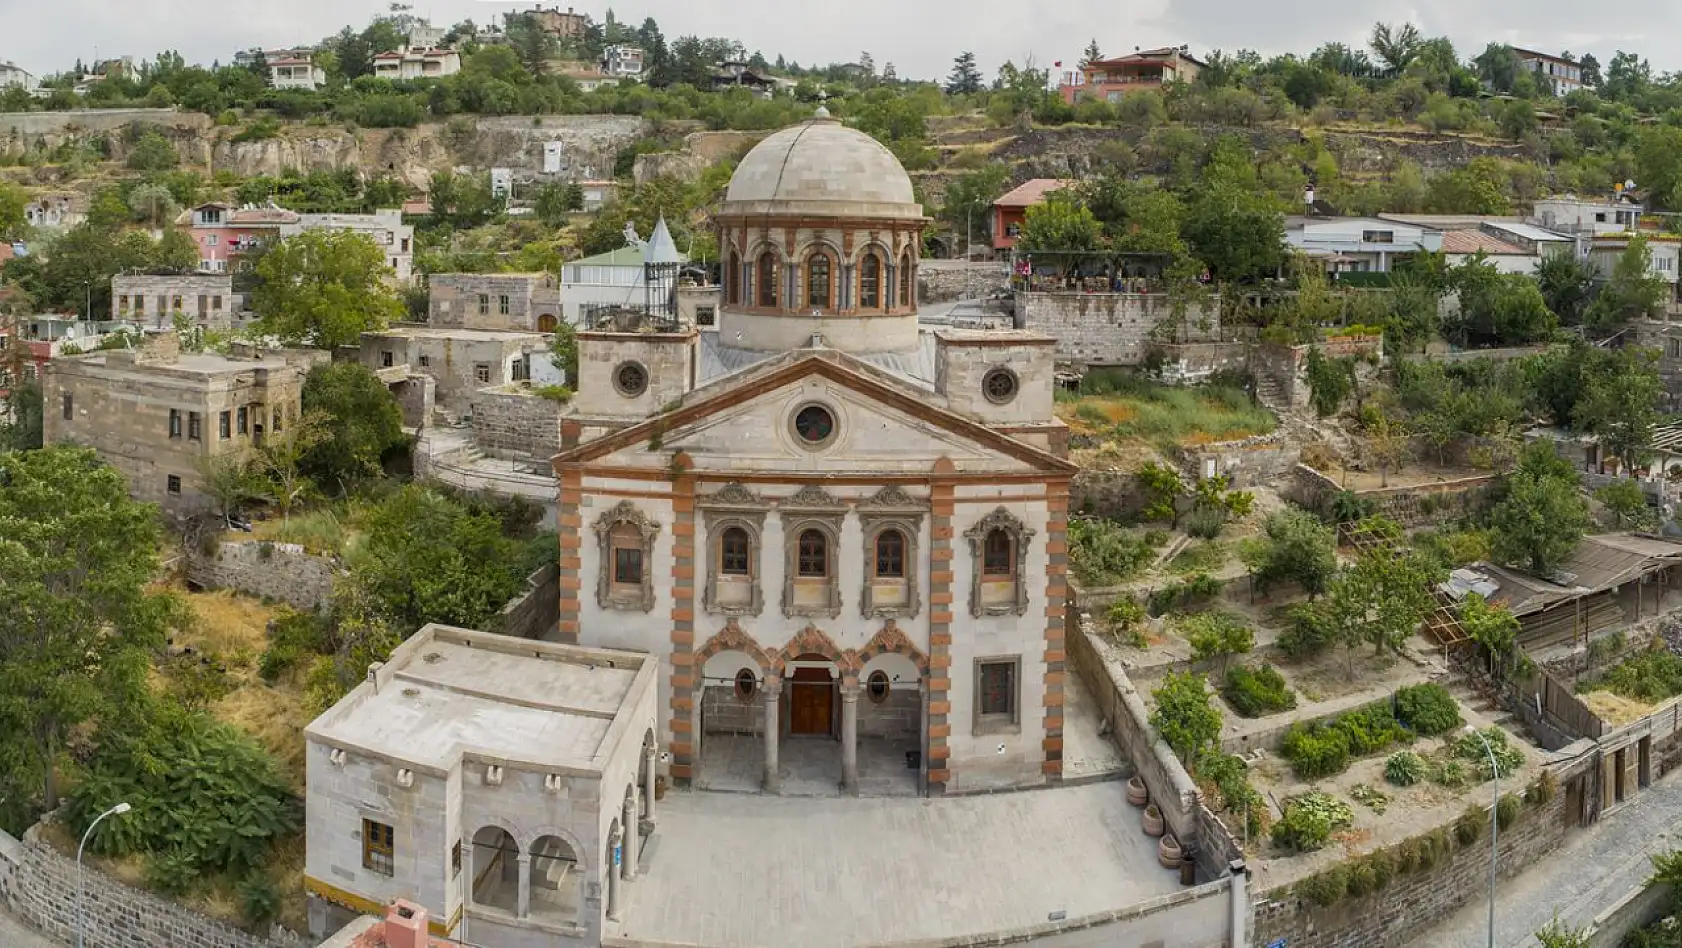 Burayı mutlaka görmelisiniz! Kayseri'de bir zamanlar kiliseydi bugün ise cami...